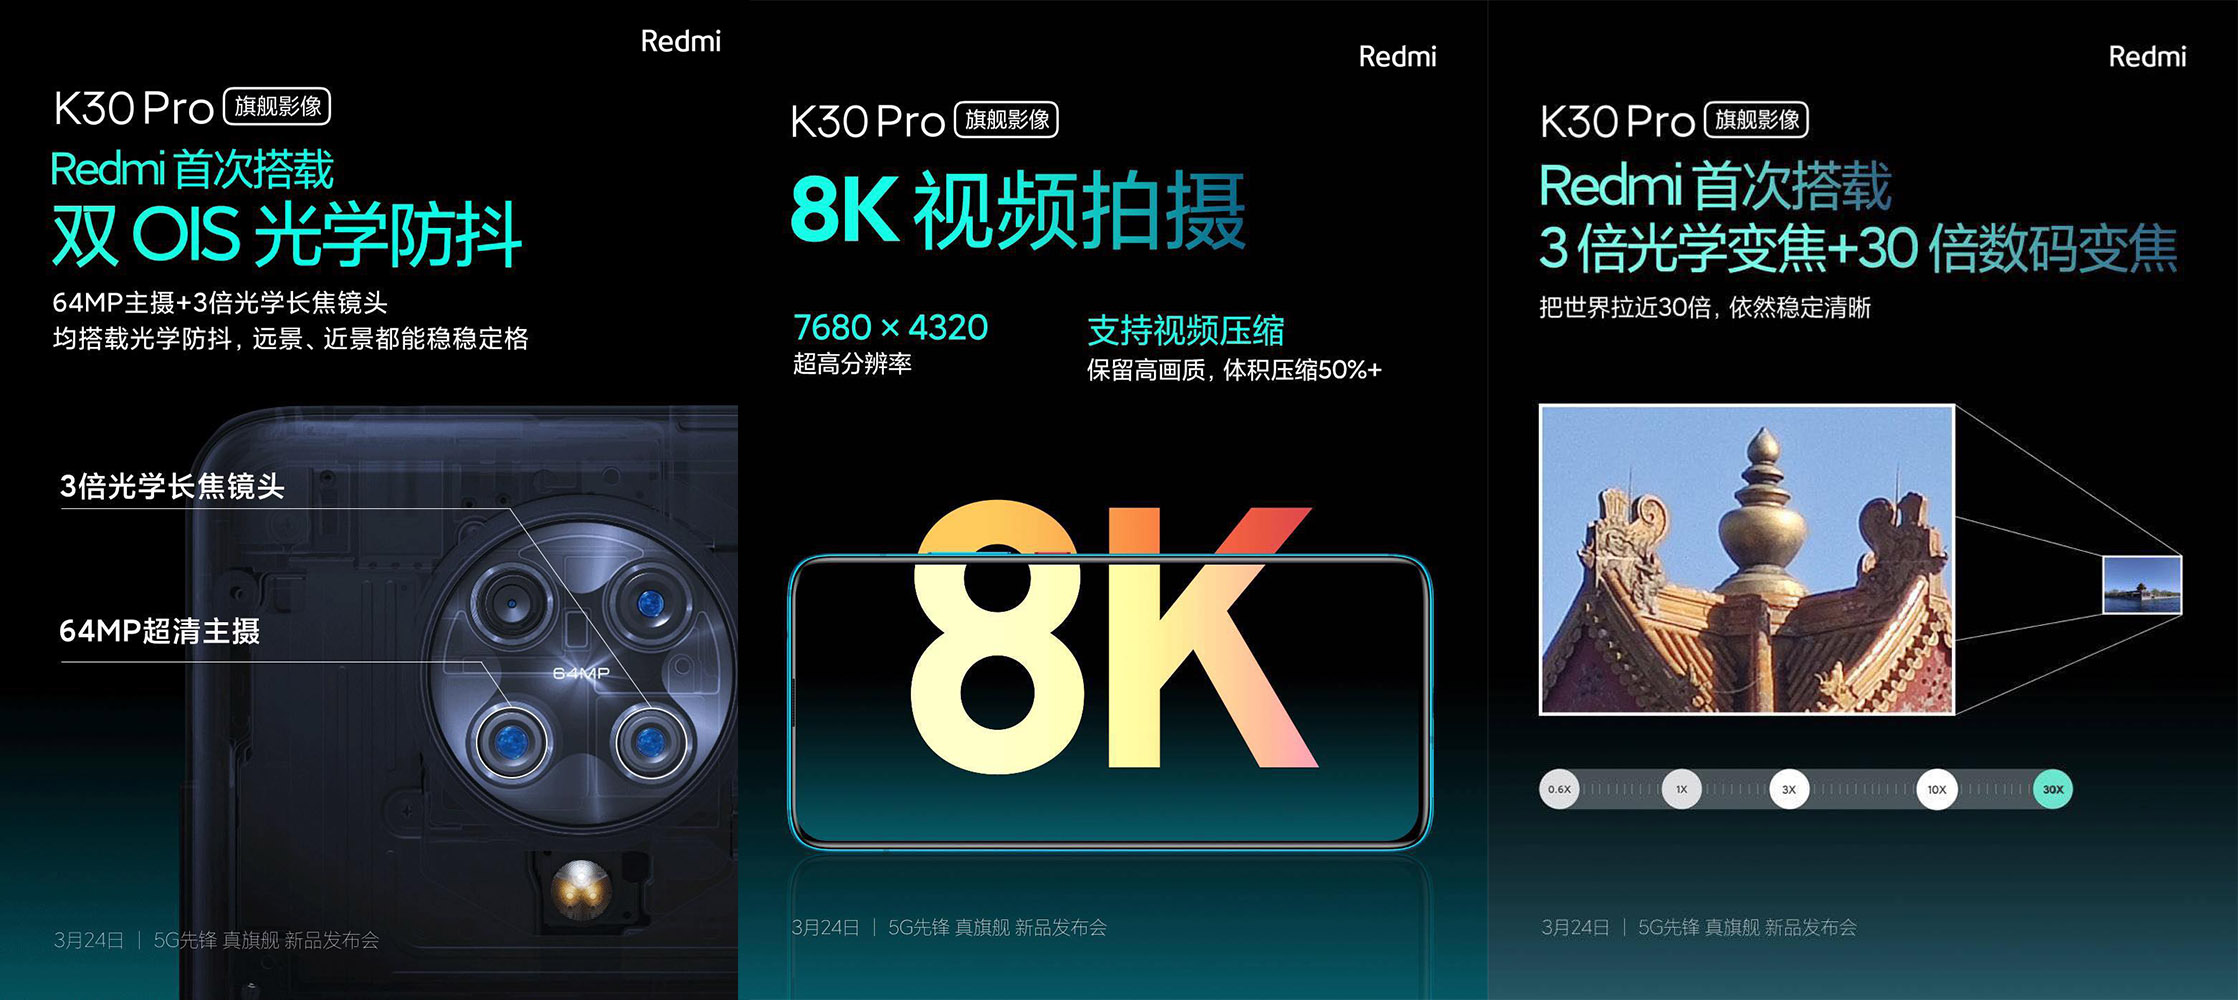 Redmi hé lộ toàn bộ thông tin về chiếc K30 Pro:
2 camera 64MP, camera Pop-Up có đèn đổi màu,...